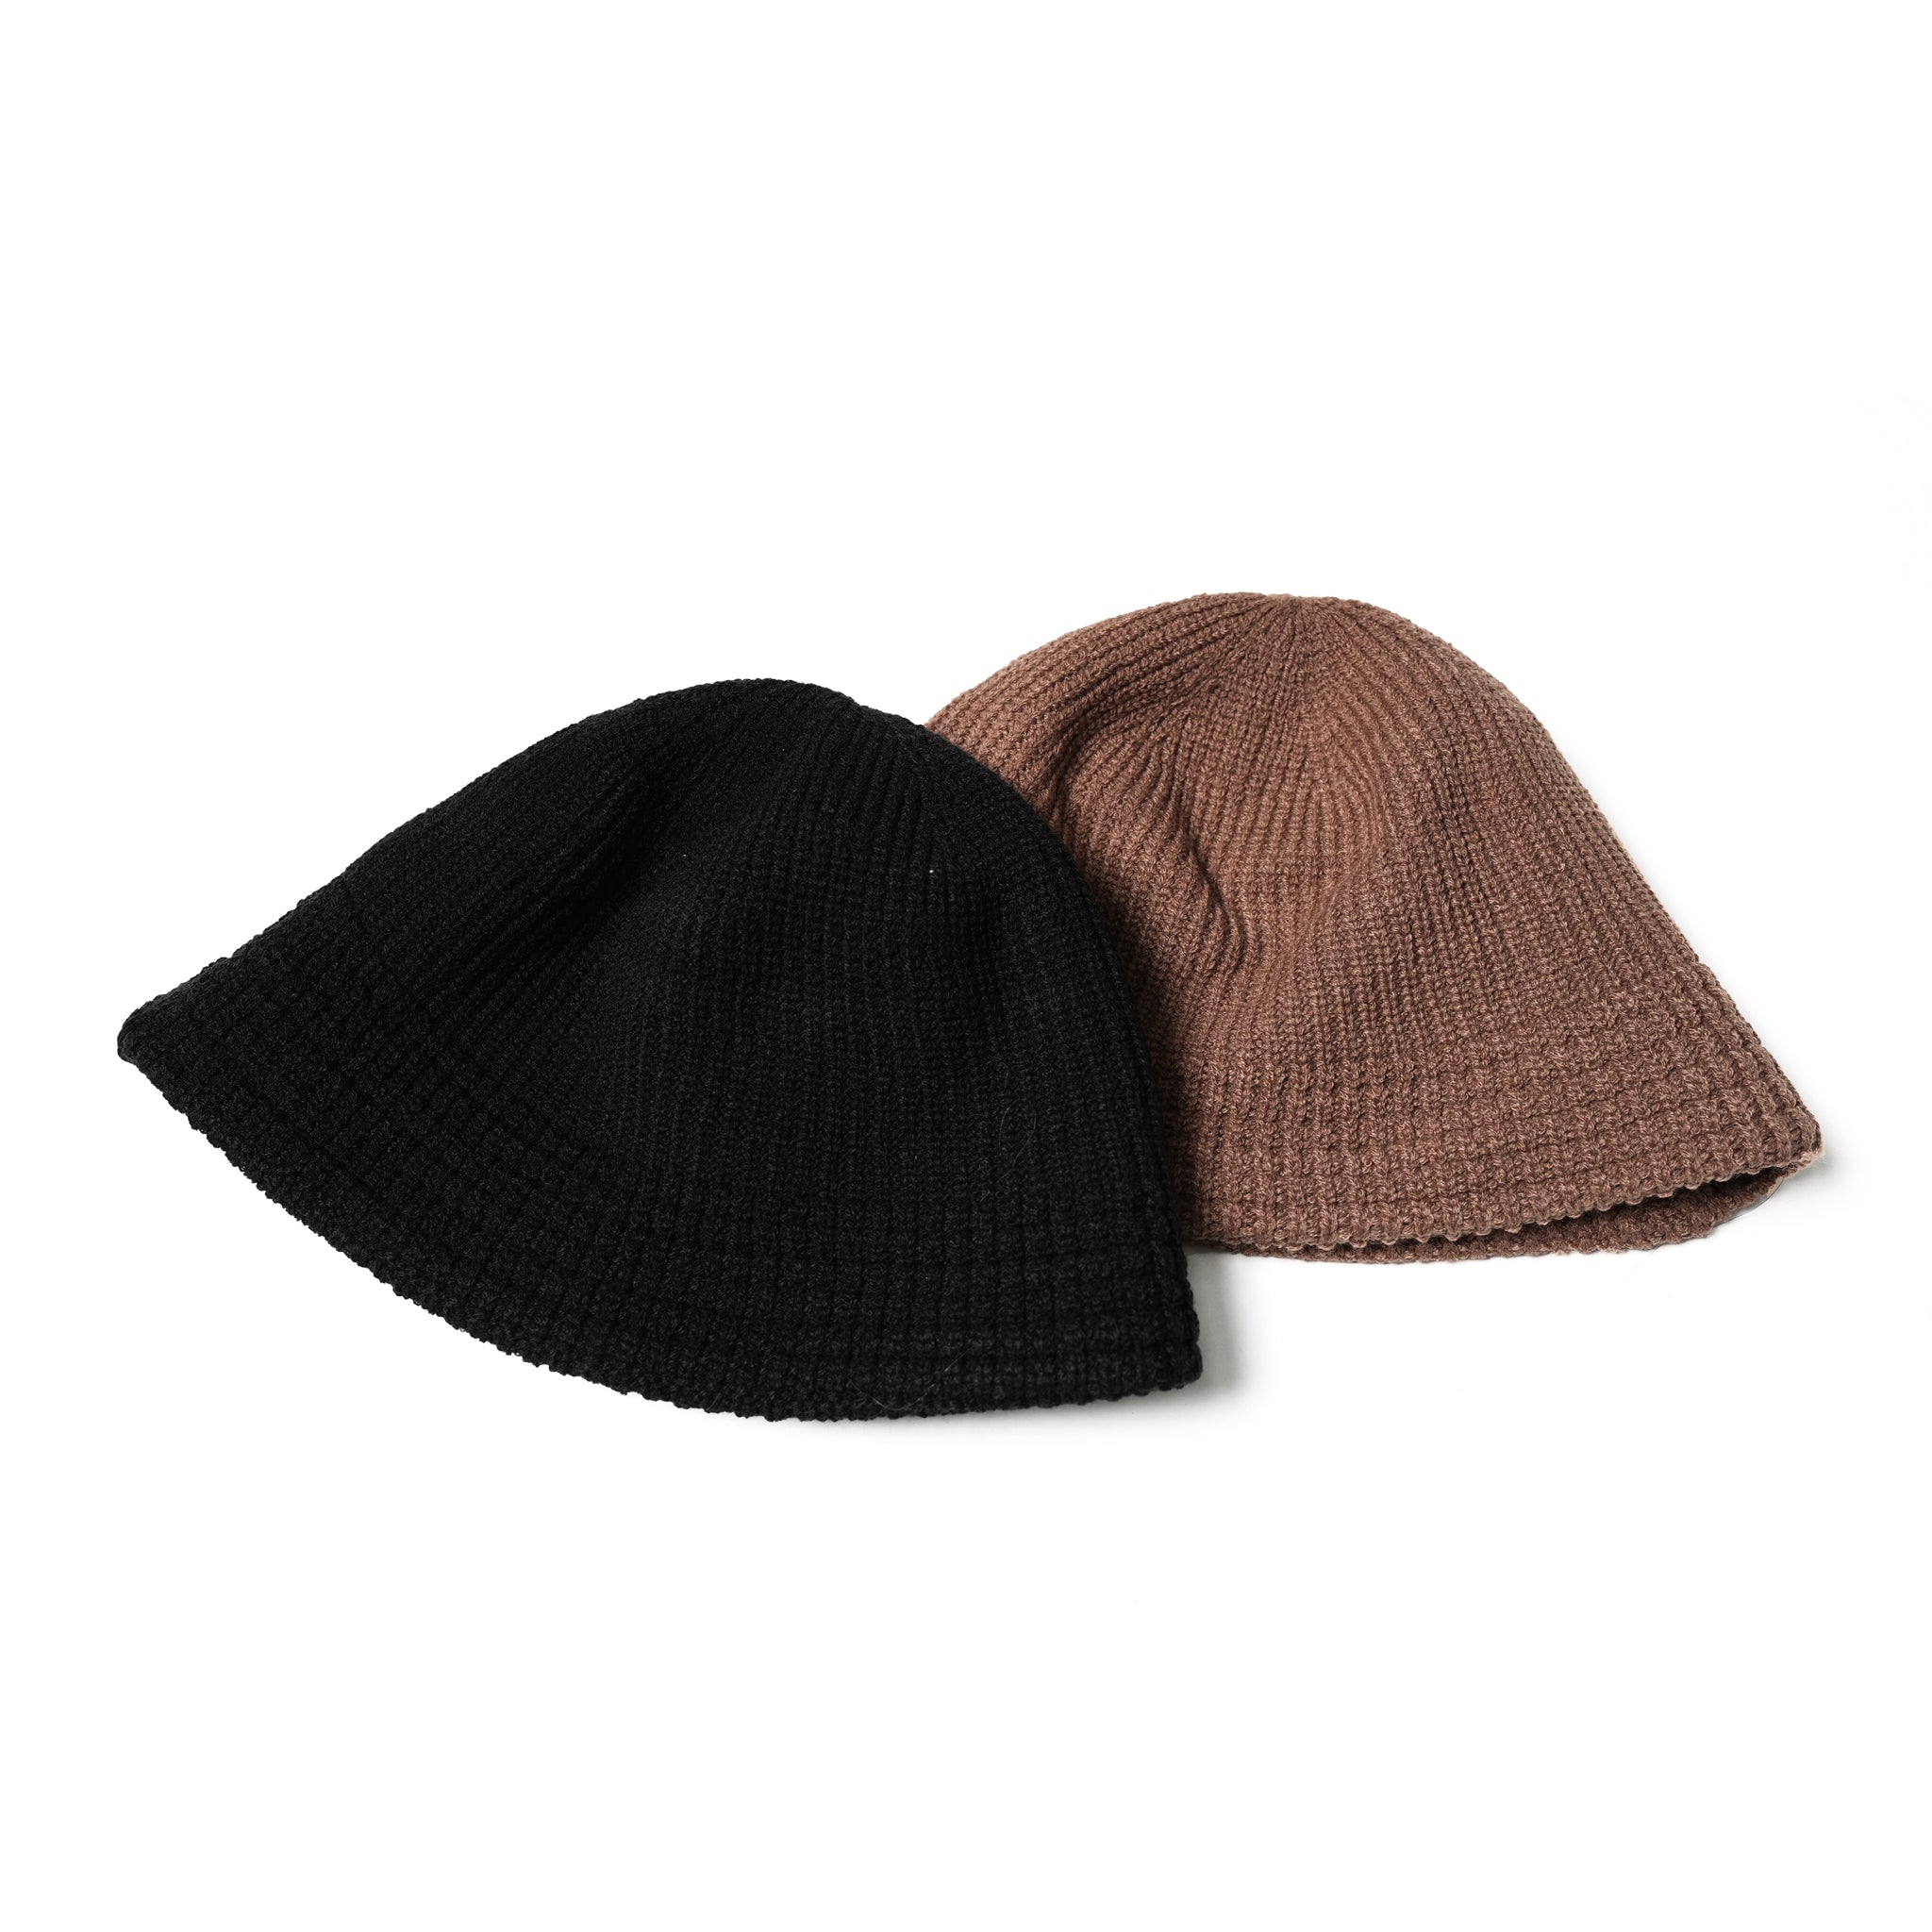 No:901T-1721 | Name:KNIT CAP-HAT | Color:Brown-Orange/Black【QUOLT_クオルト】【ネコポス選択可能】